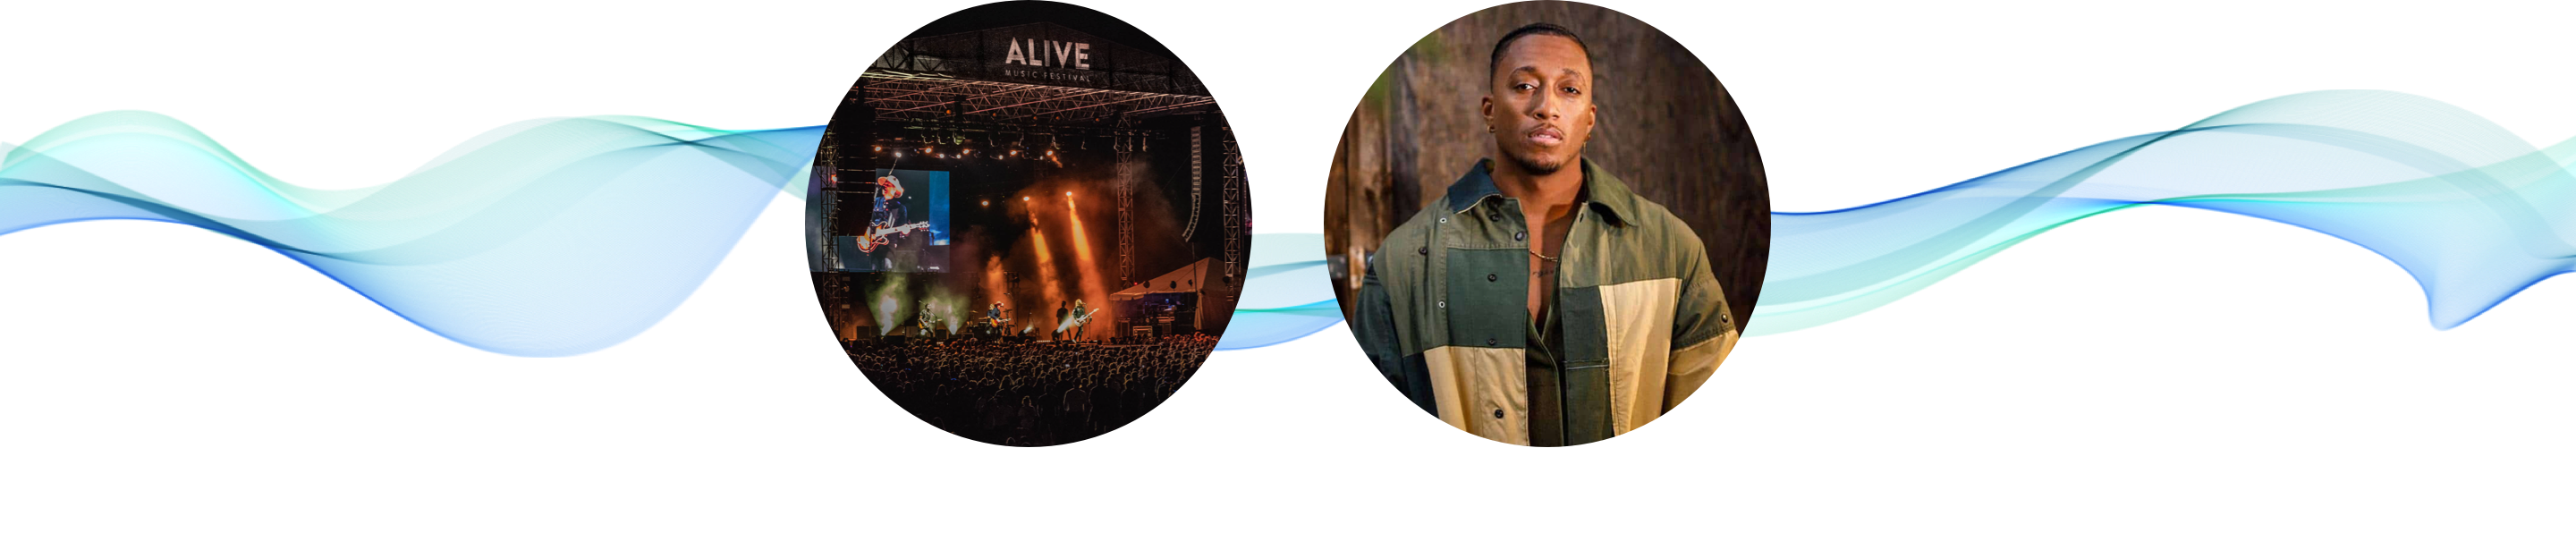 Alive Music Festival featuring Lecrae